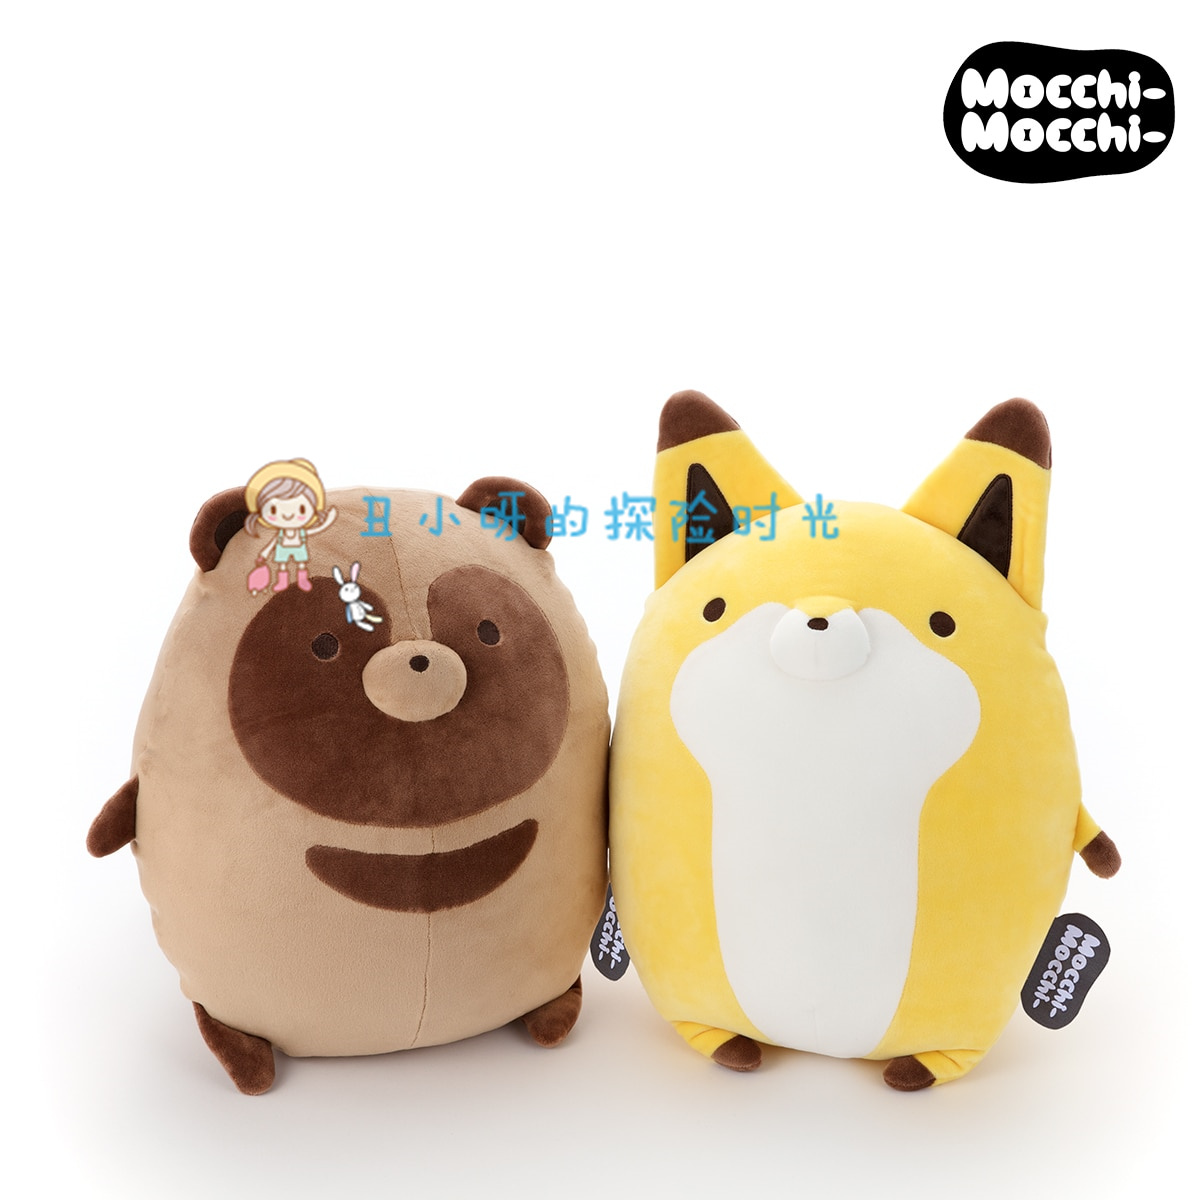 日本正版小狸猫和小狐狸mocchi抱枕毛绒公仔靠枕娃娃柔软有弹性